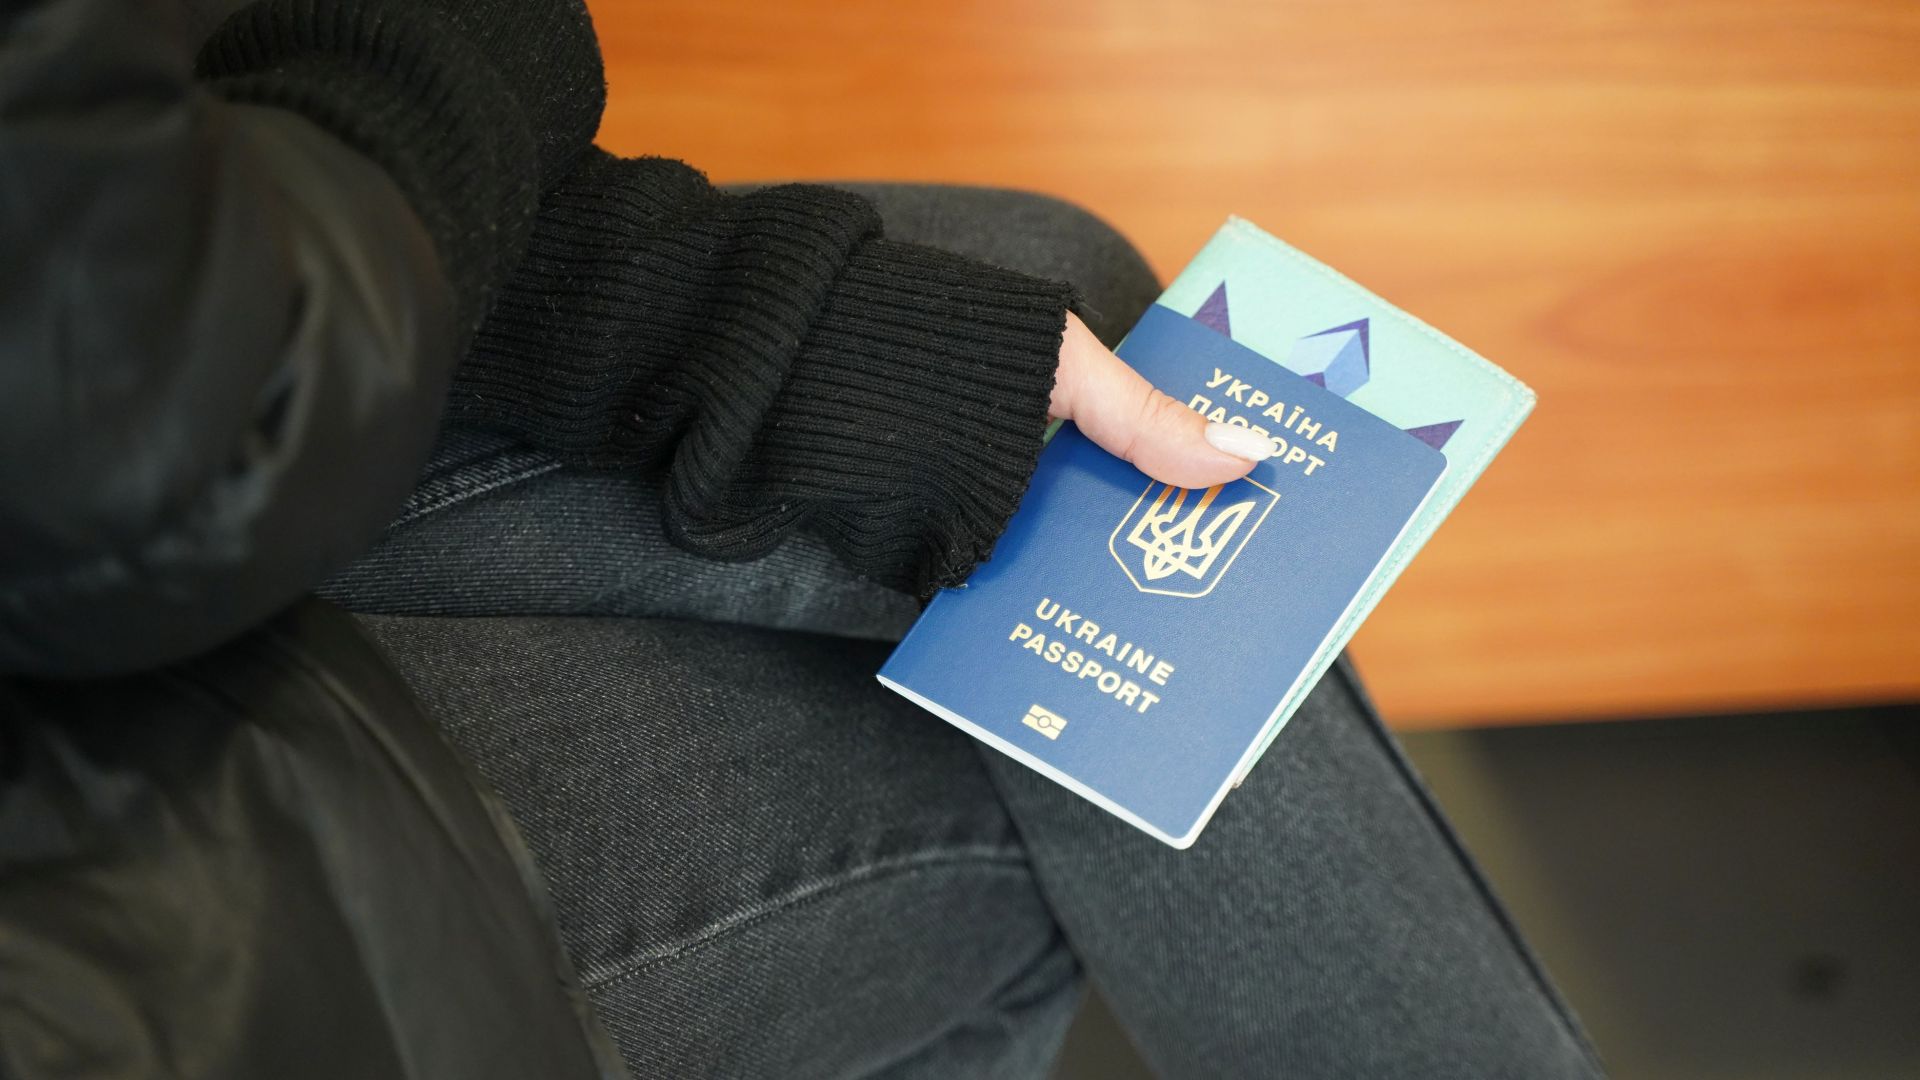 paszport ukraiński